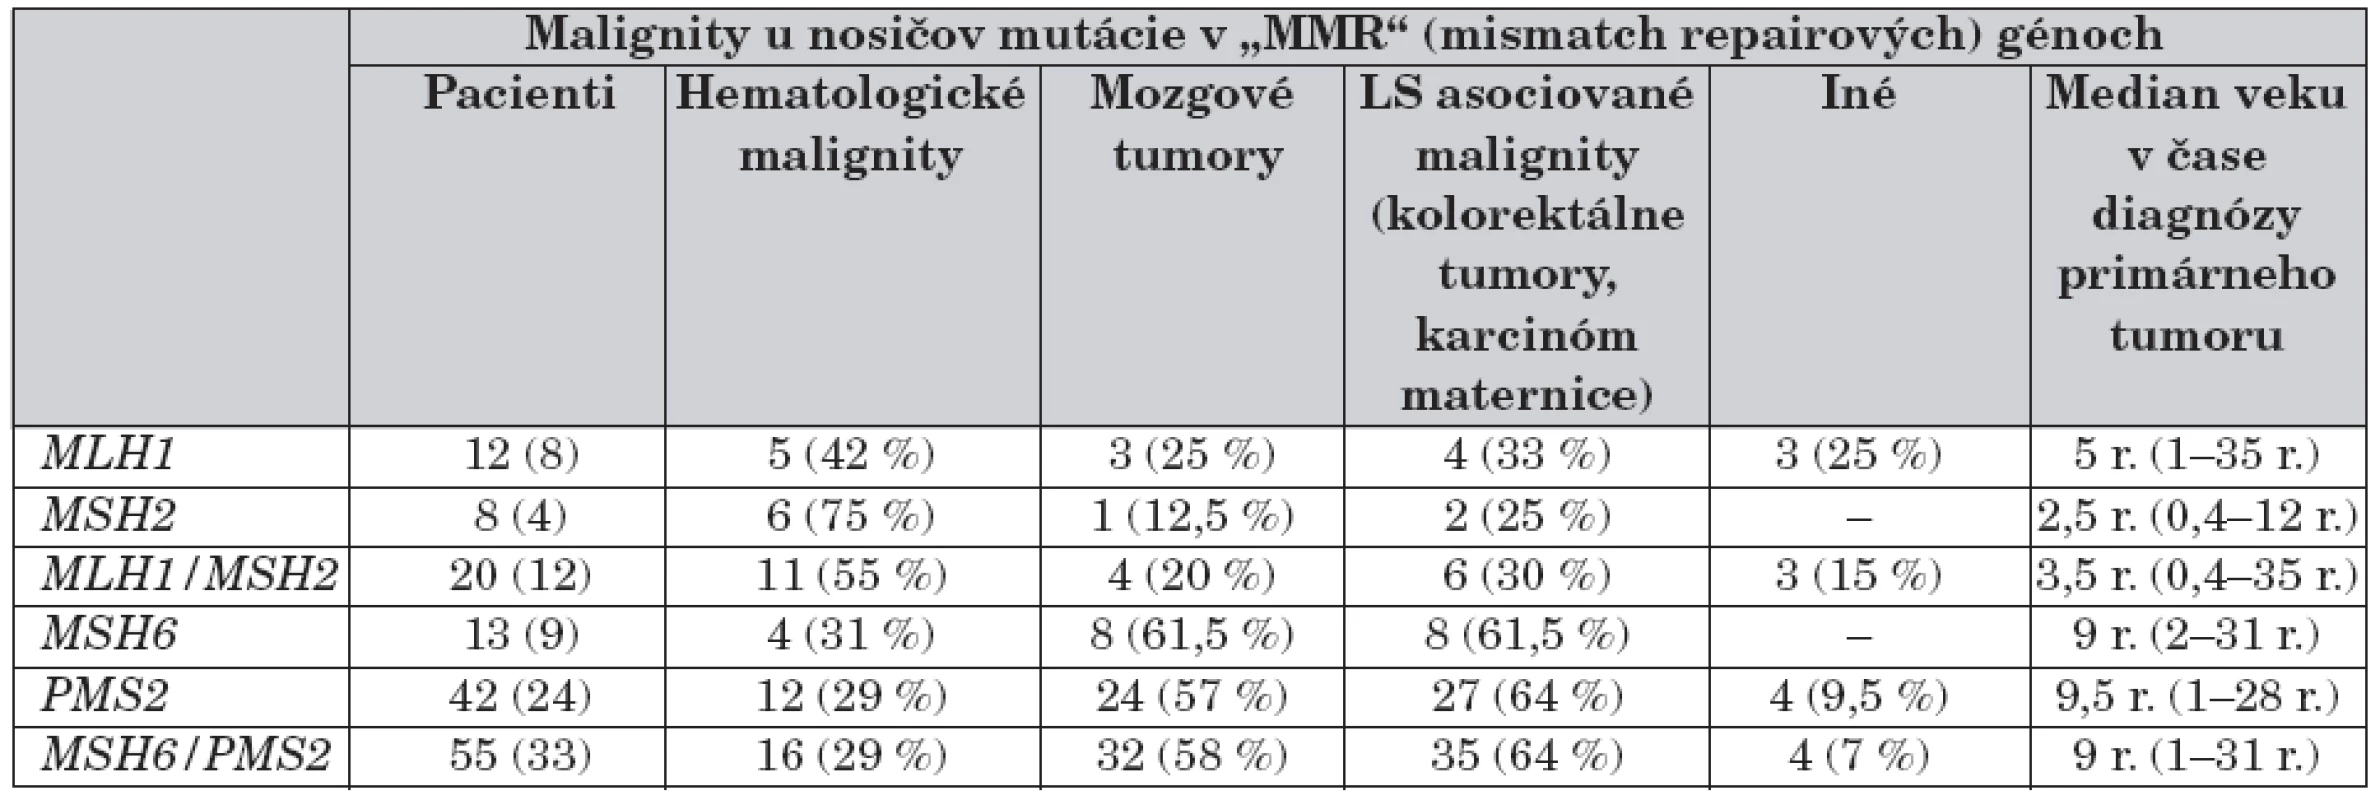 Podiel mutácií v génoch MLH1/MSH2 a MSH6/PMS2 na vzniku a spektre malígnych tumorov.